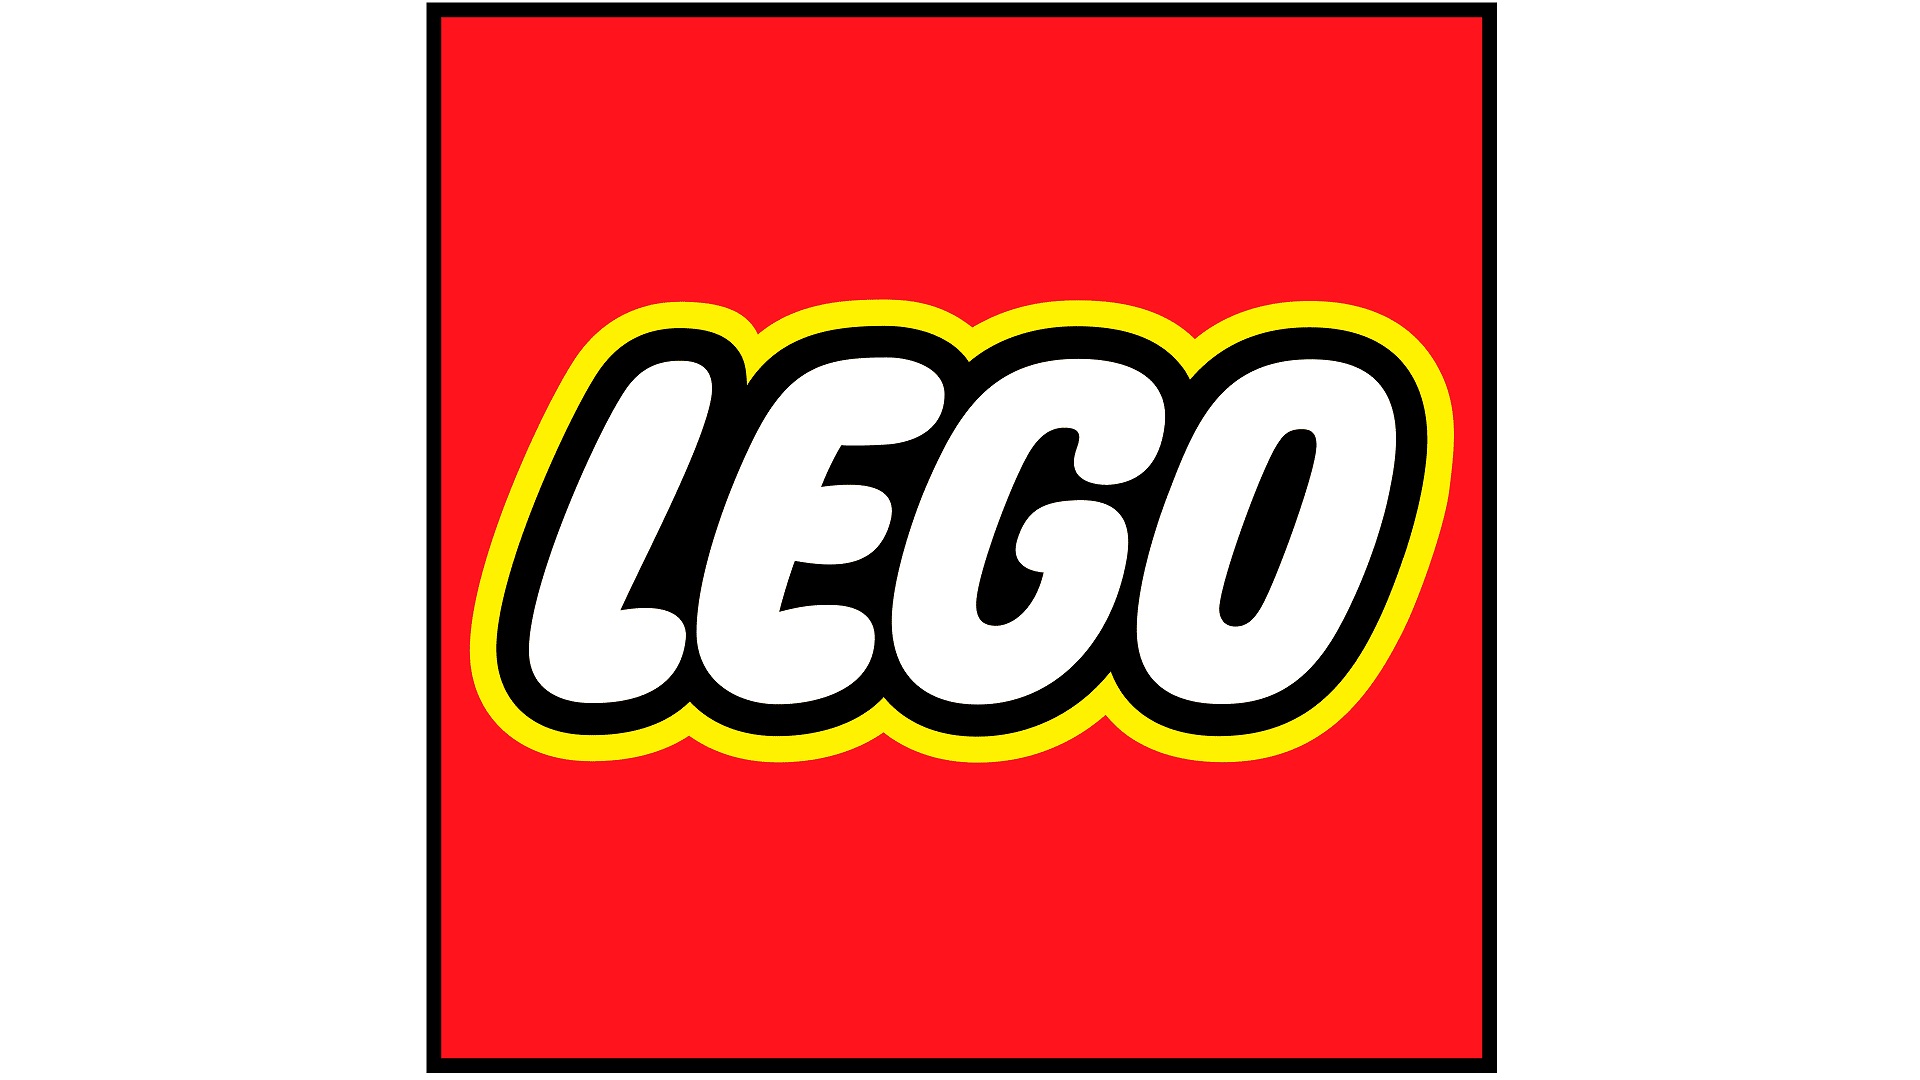 เกมฟุตบอล LEGO จาก 2K Games ได้รับยืนยันผ่านมินิฟิกเกอร์ของ LEGO